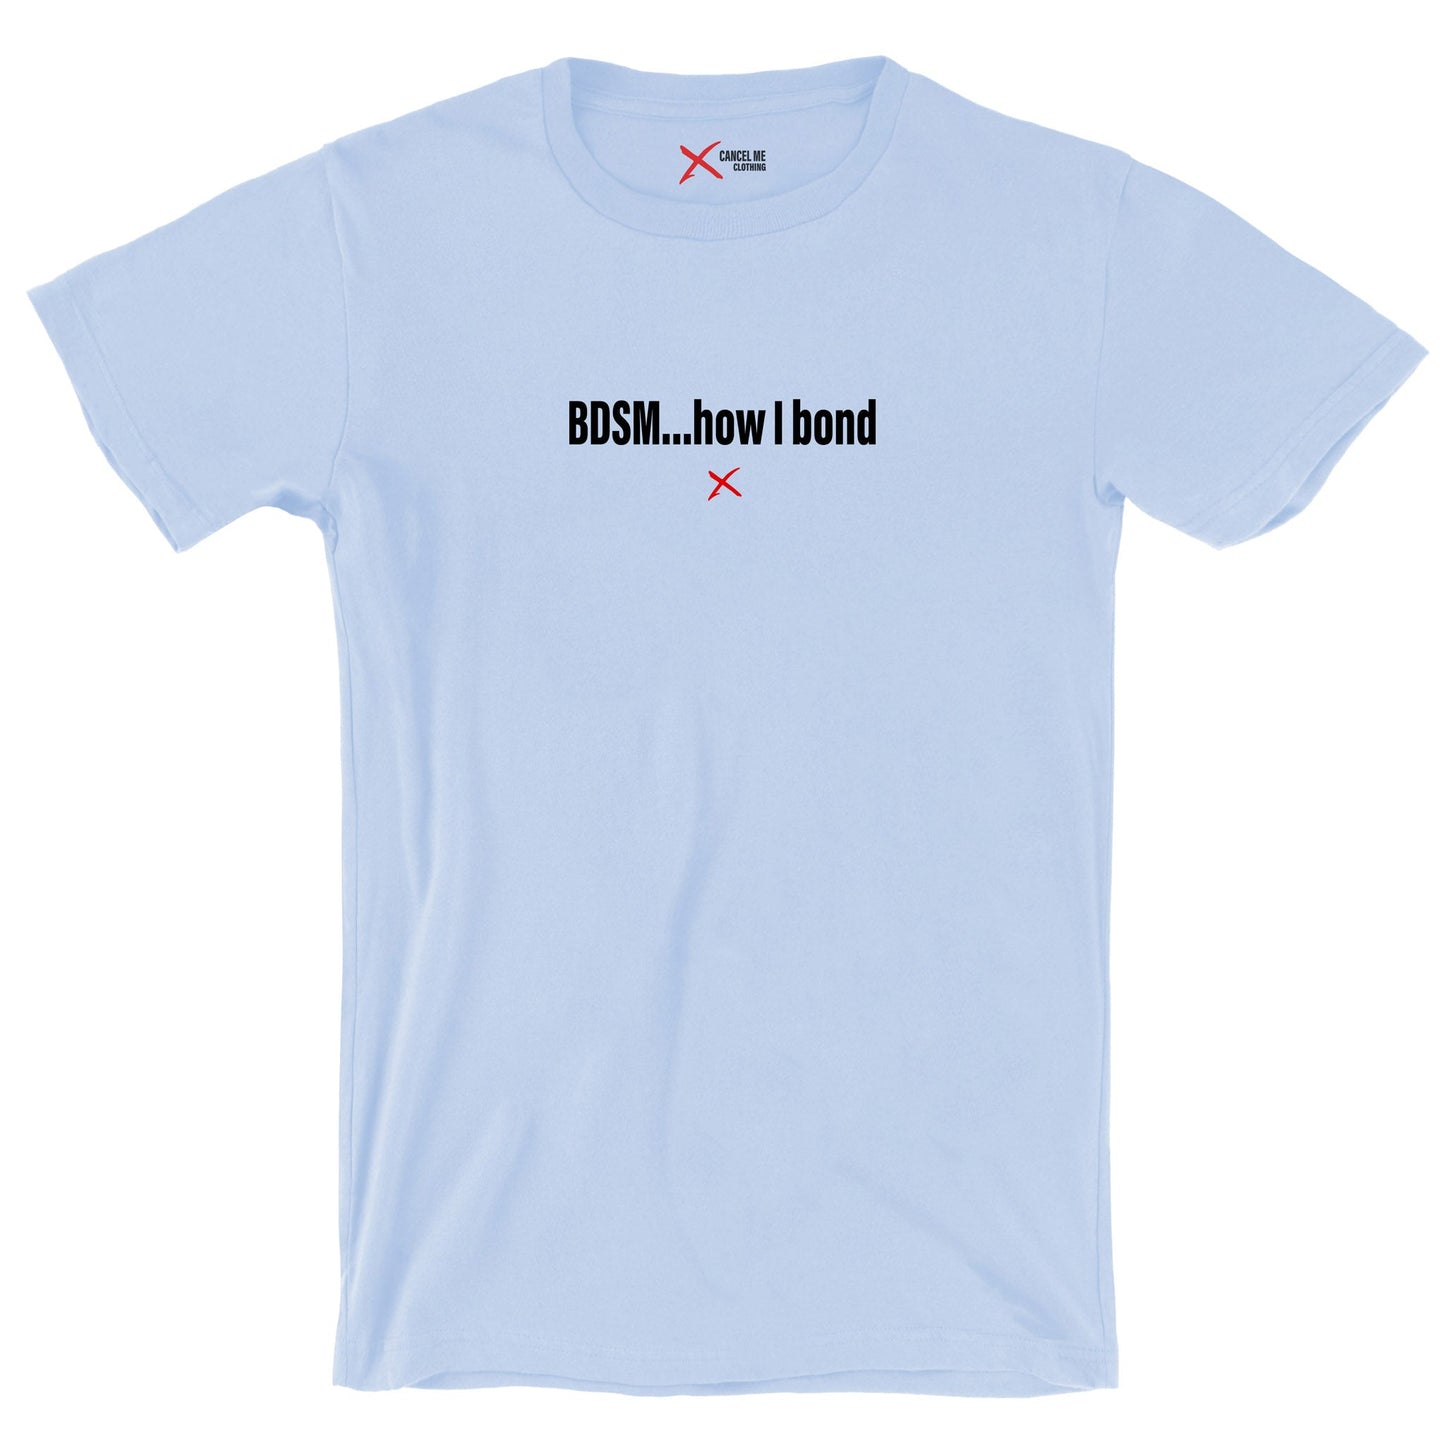 BDSM...how I bond - Shirt